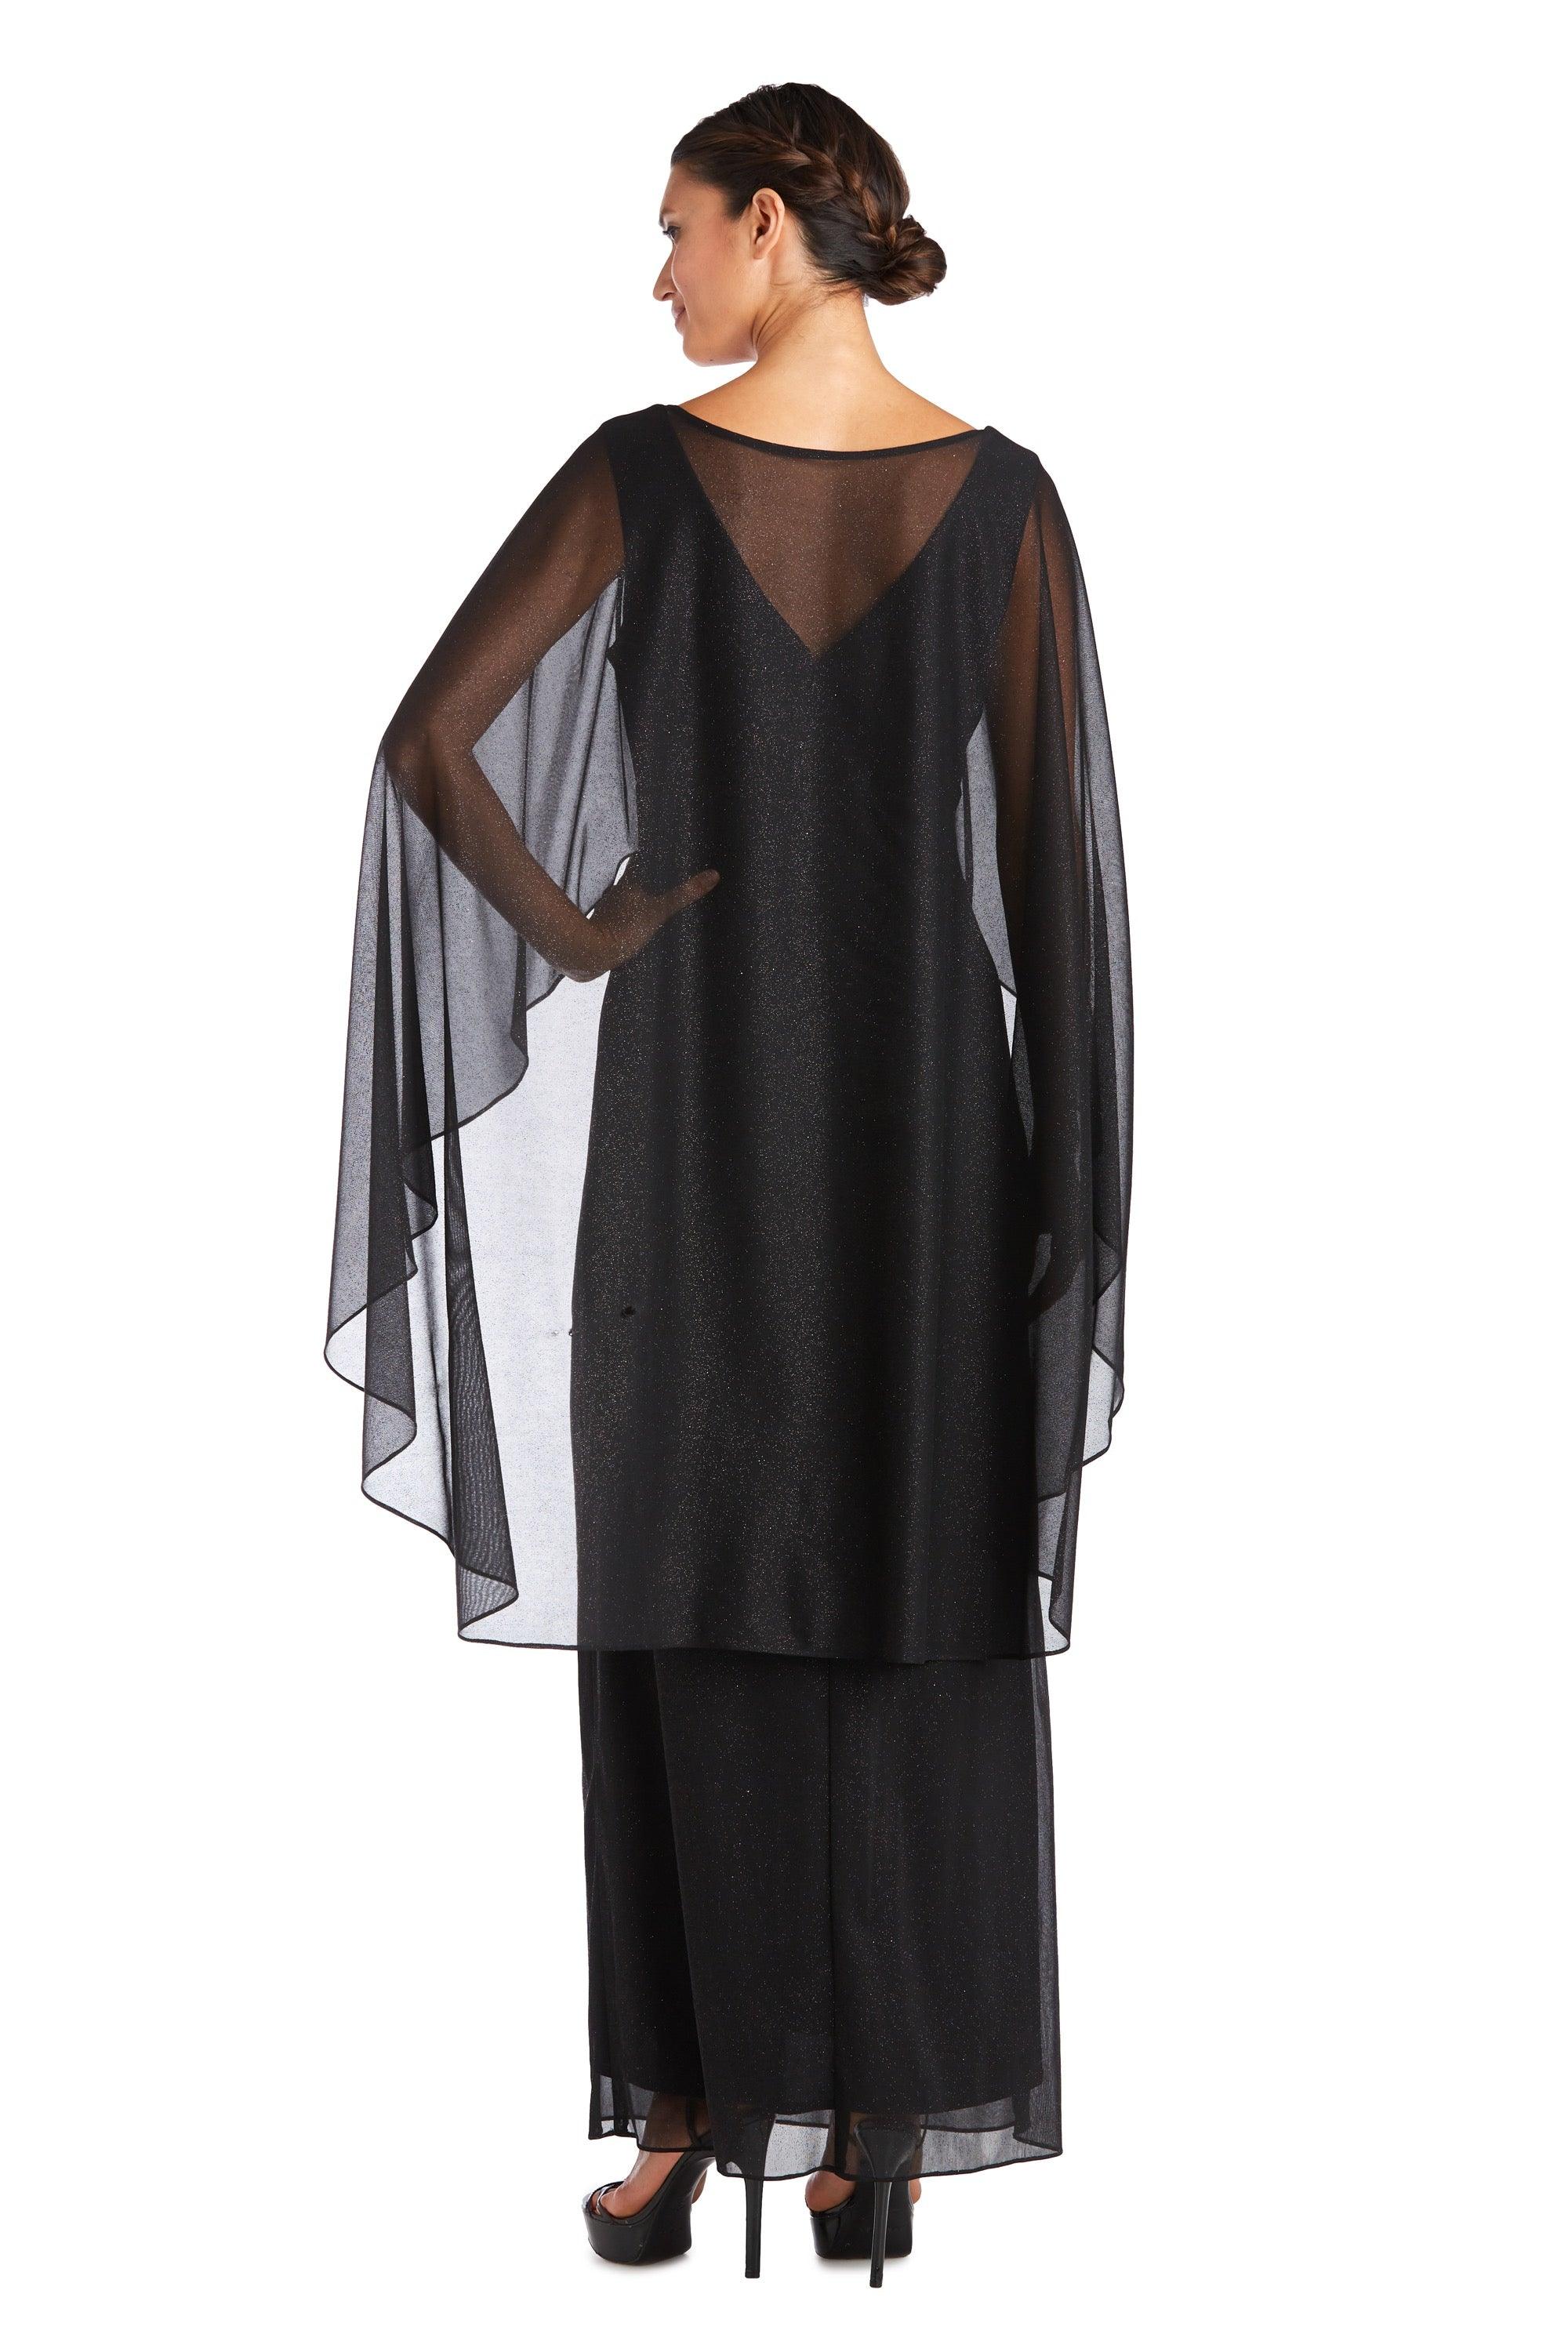 R&M Richards Long Formal Petite Cape Dress 2384P - The Dress Outlet